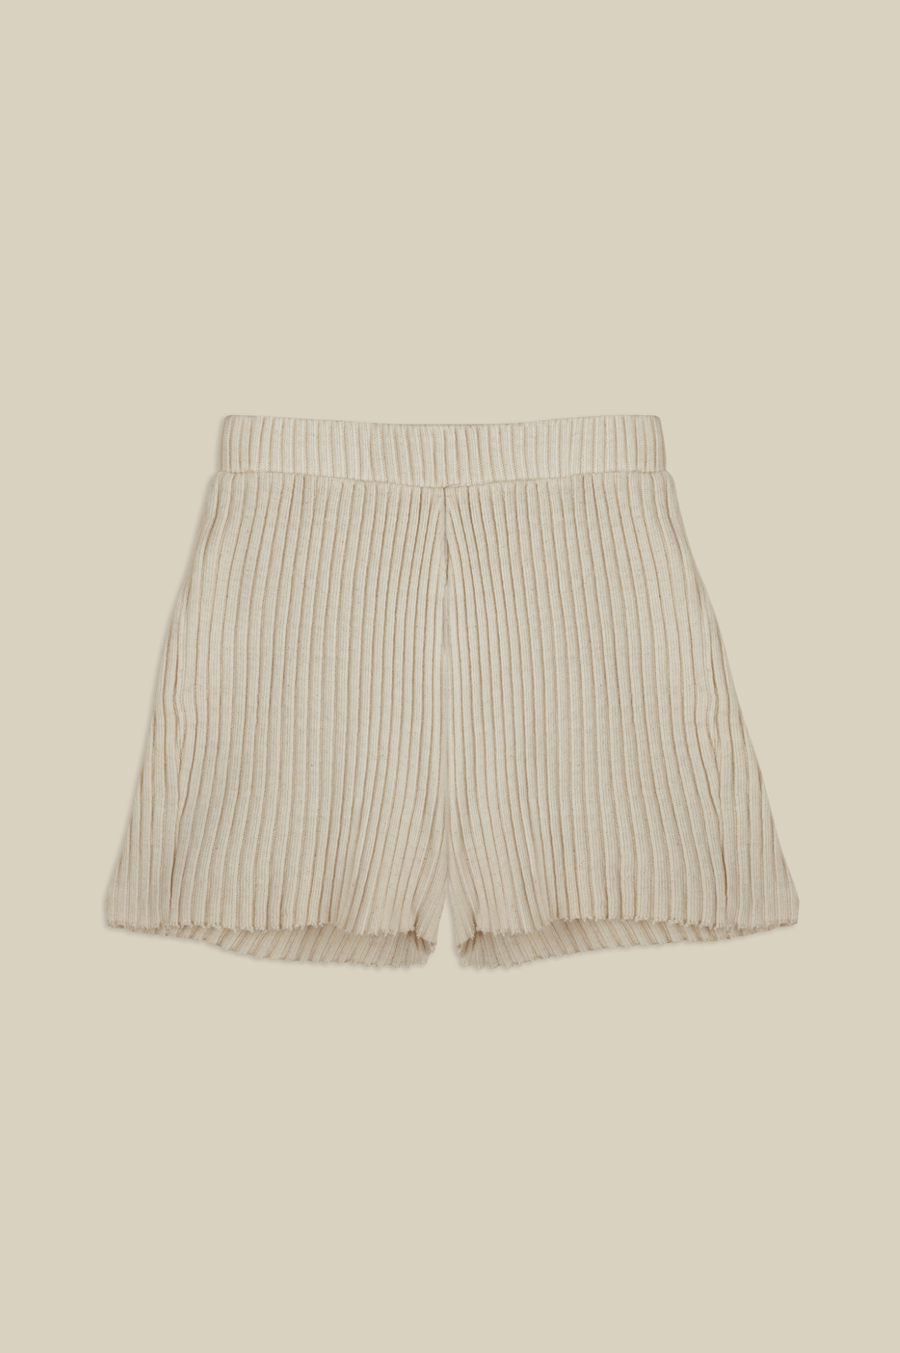 "CUB" Knit Shorts in Natural